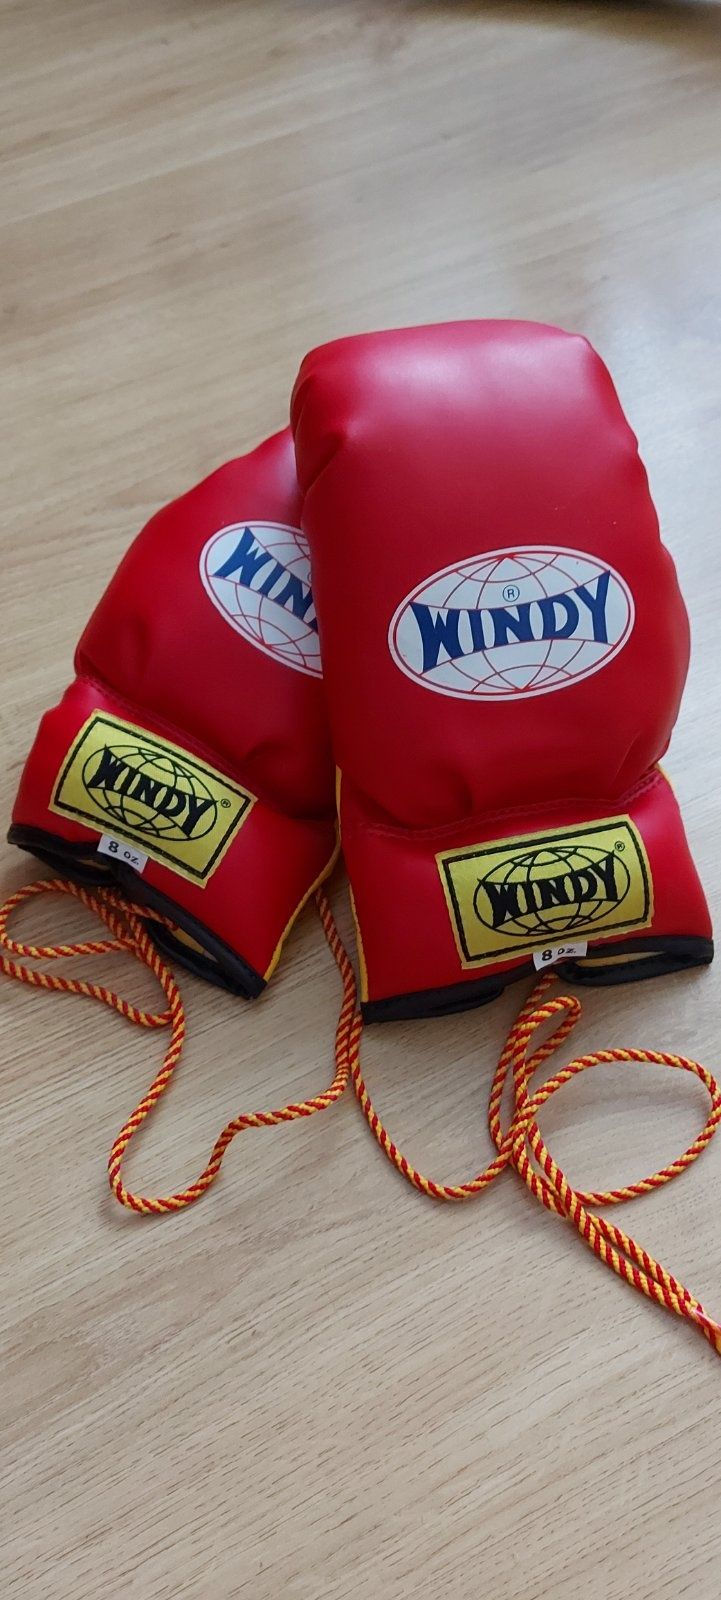 Боксерские перчатки Windy 8 унций